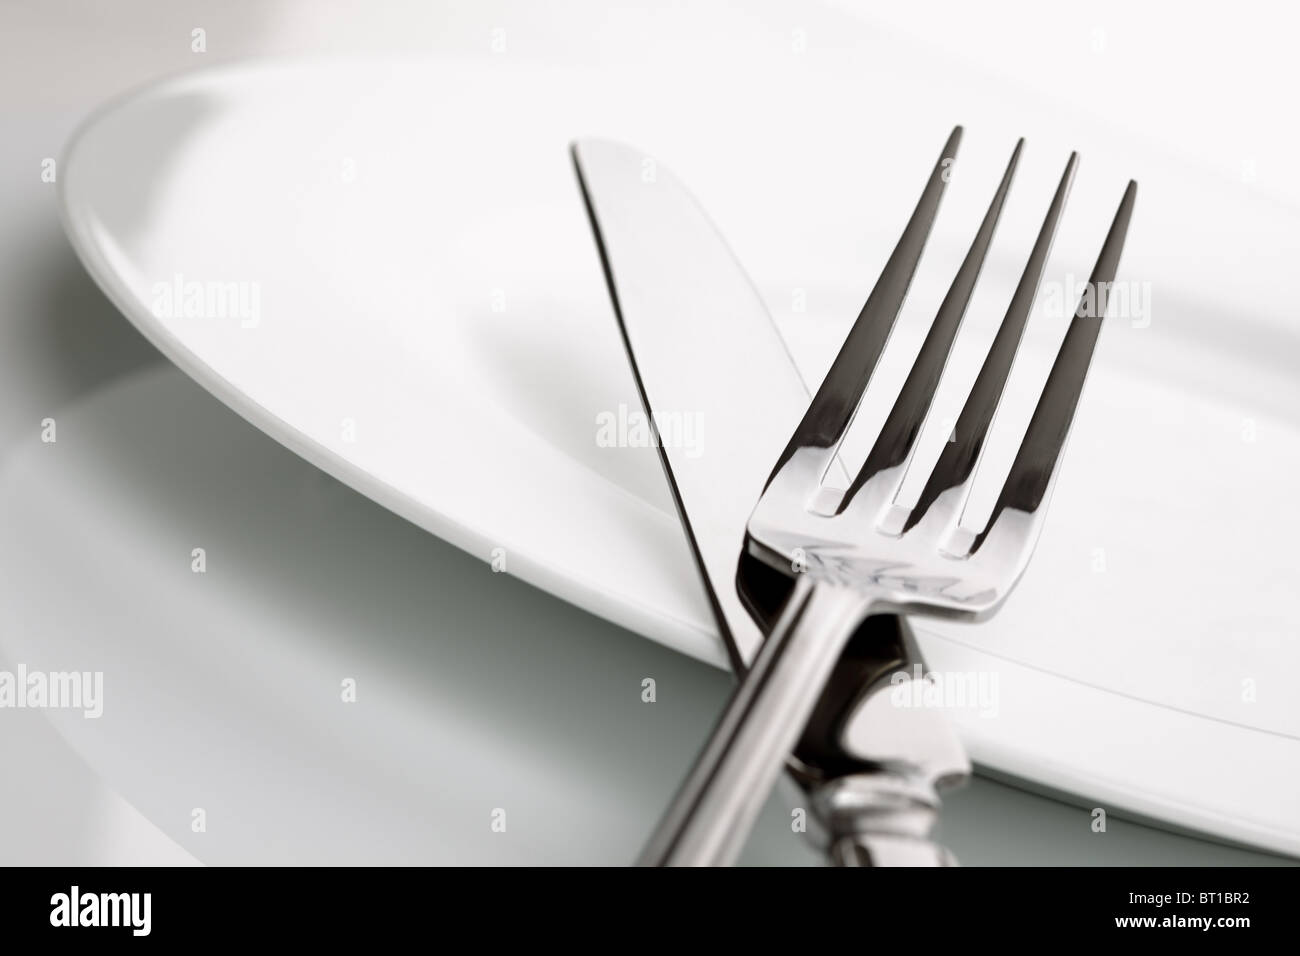 Assiette, couteau et fourchette de l'argenterie Banque D'Images